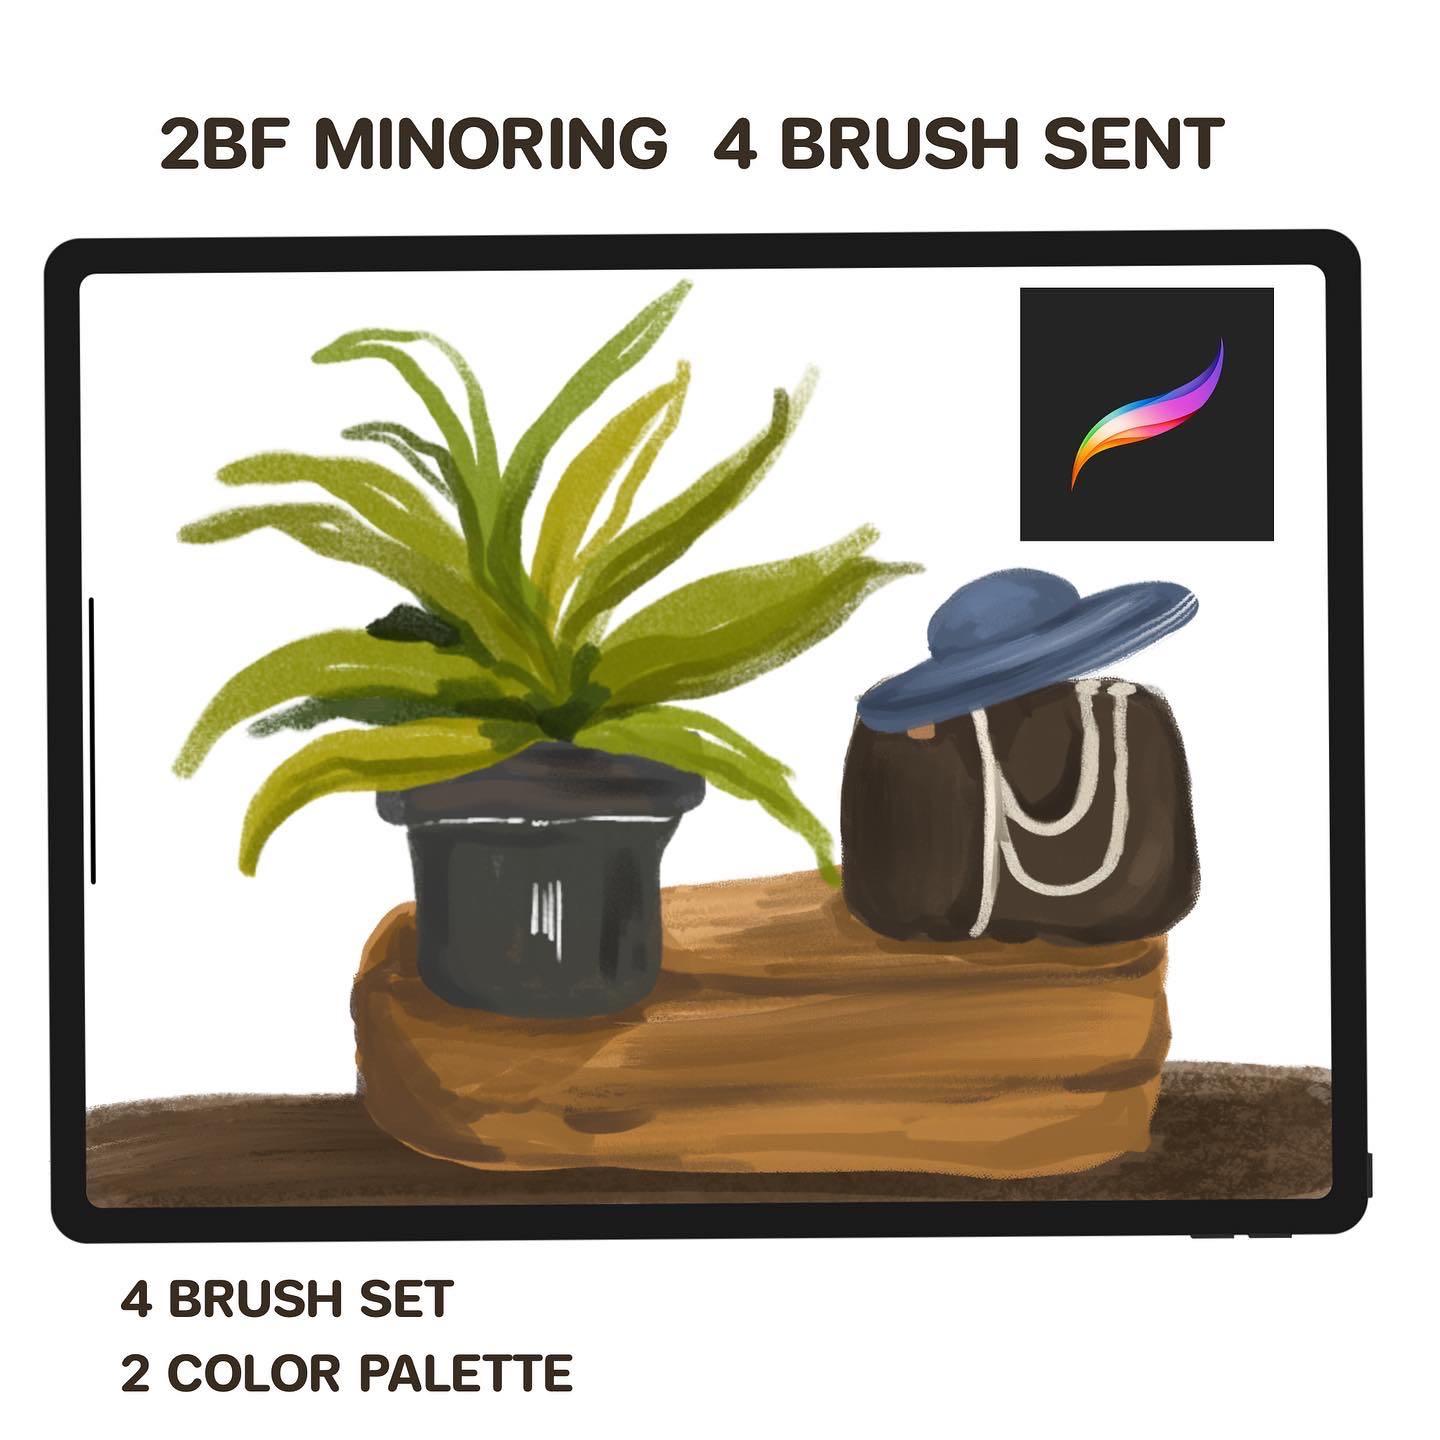 2BF Minoring 4 Brush Set